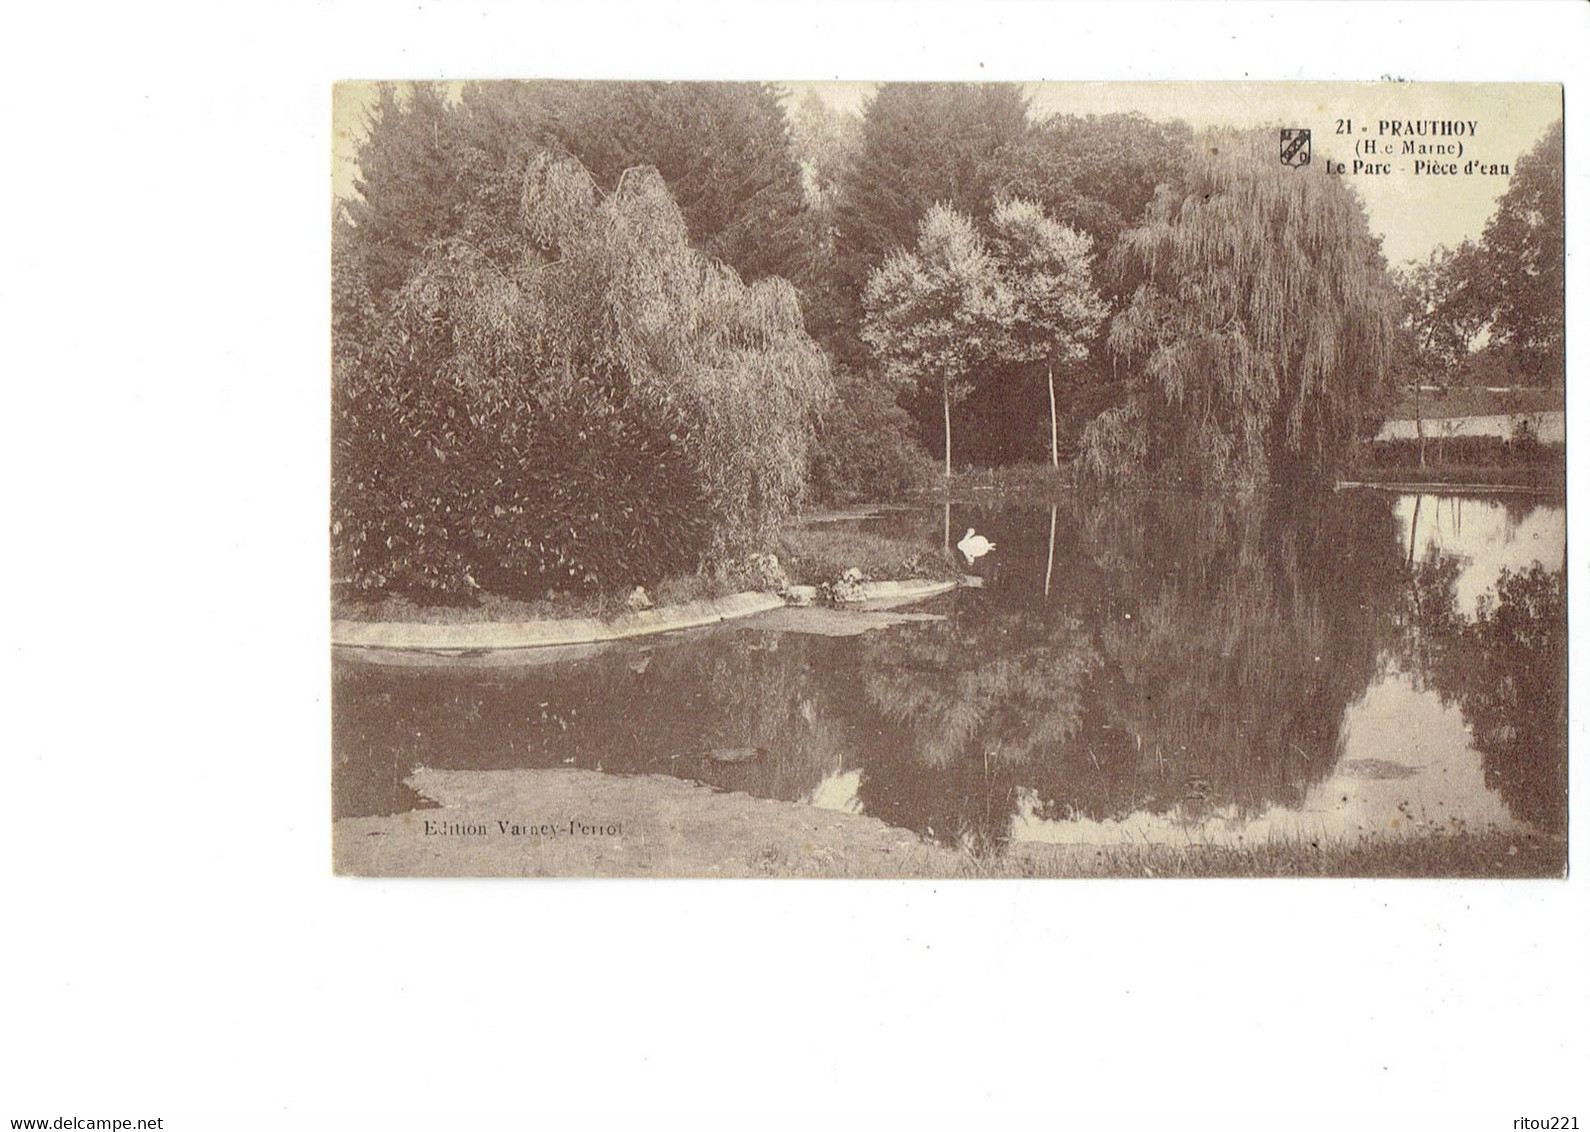 Cpa - 52 - PRAUTHOY - Les Parcs - Pièce D'eau - Cygne - N°21 Vaines Perrot - 1920 - Prauthoy